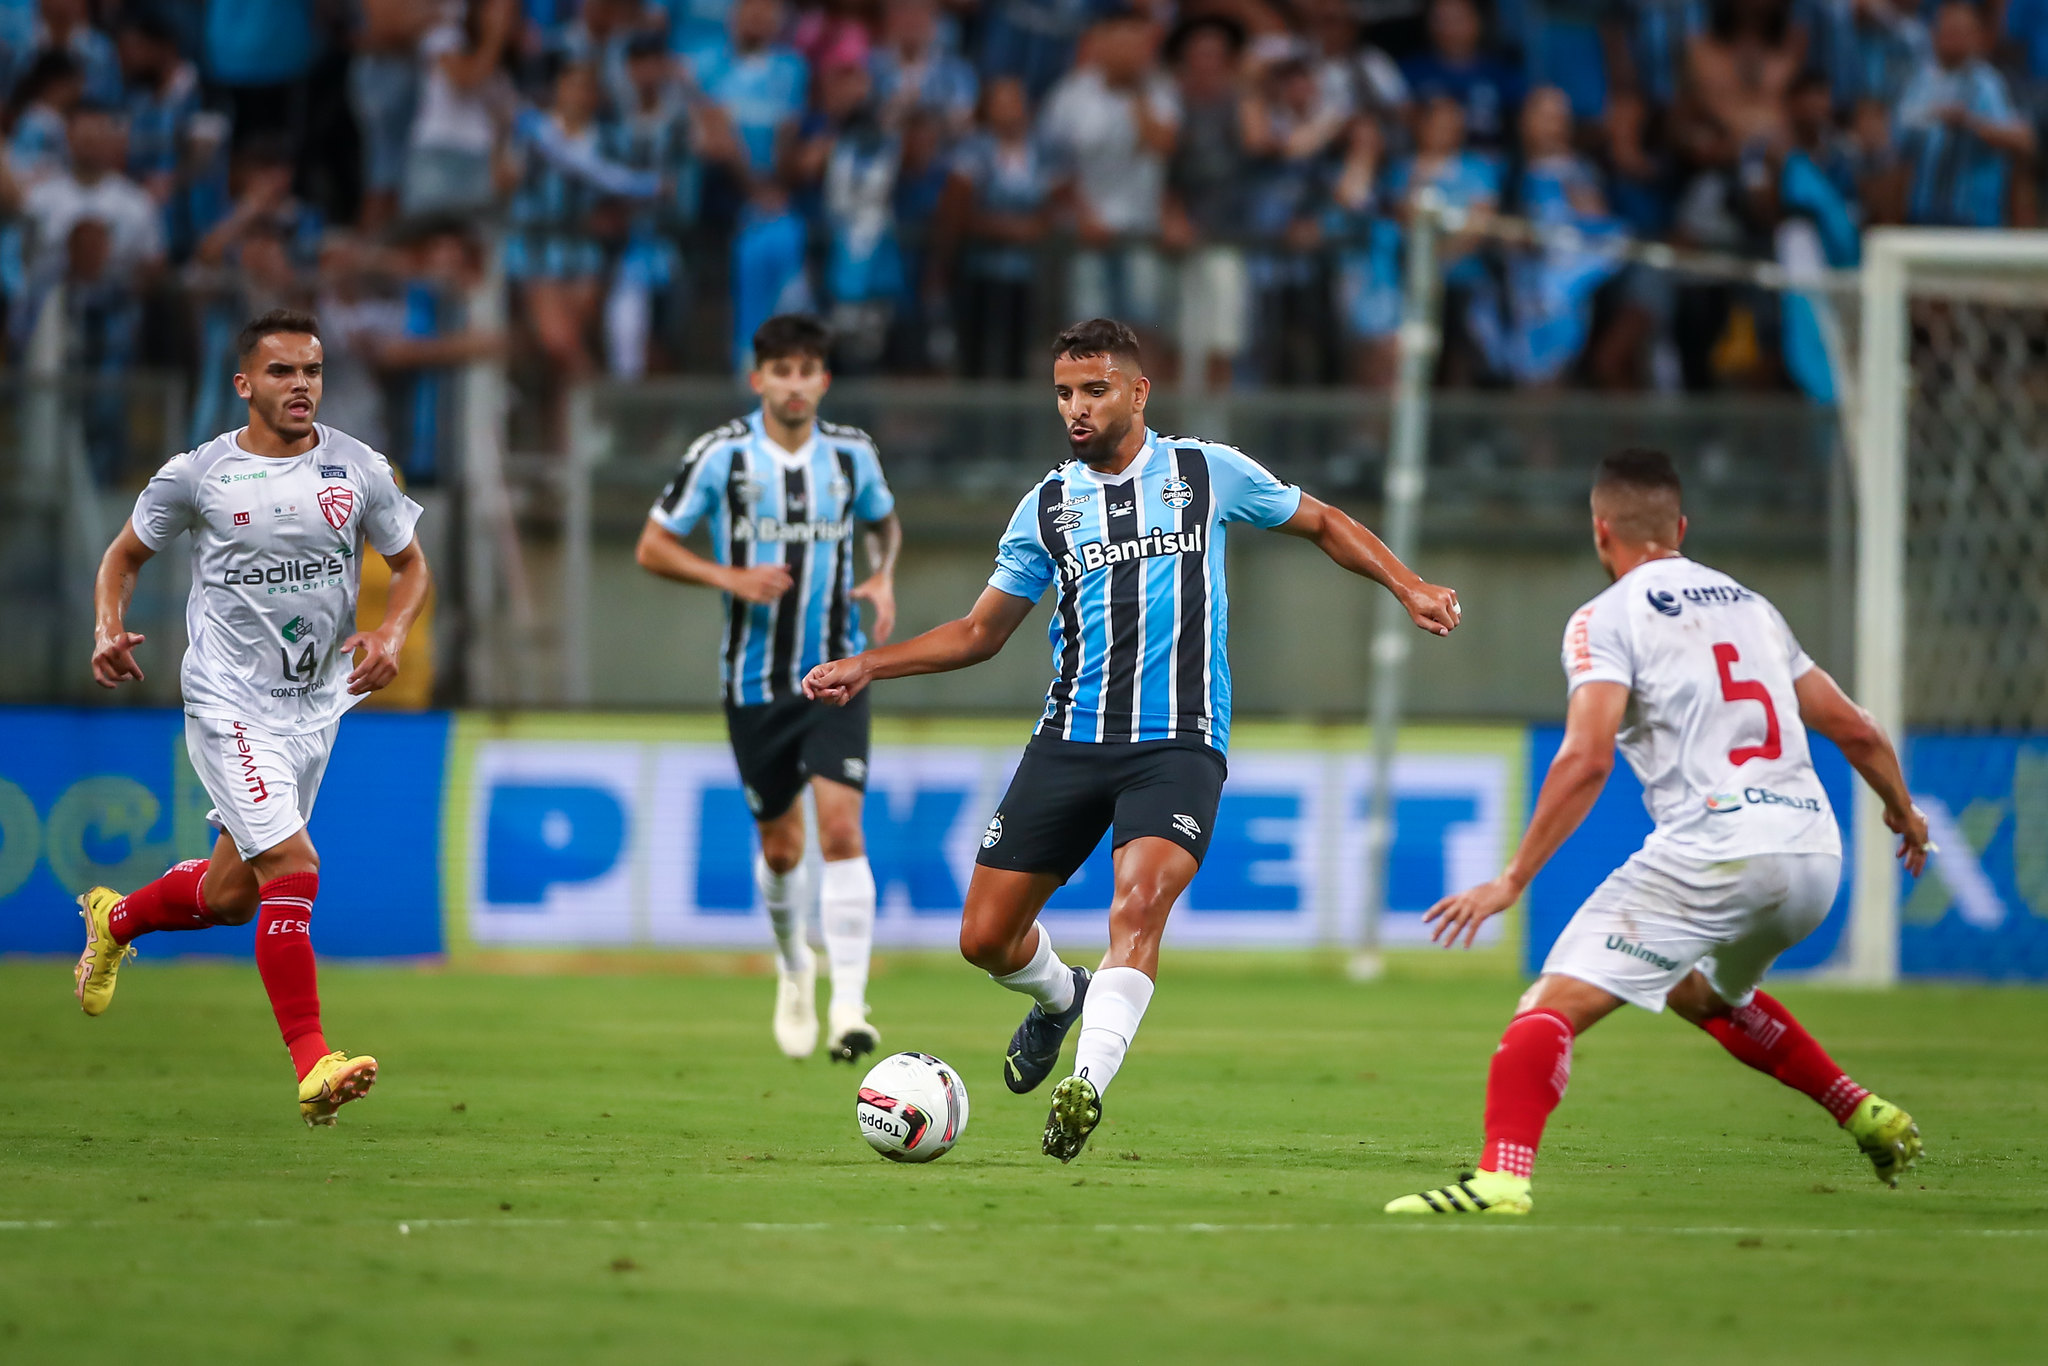 São José x Grêmio: onde assistir, horário e escalações do jogo pelo Gauchão